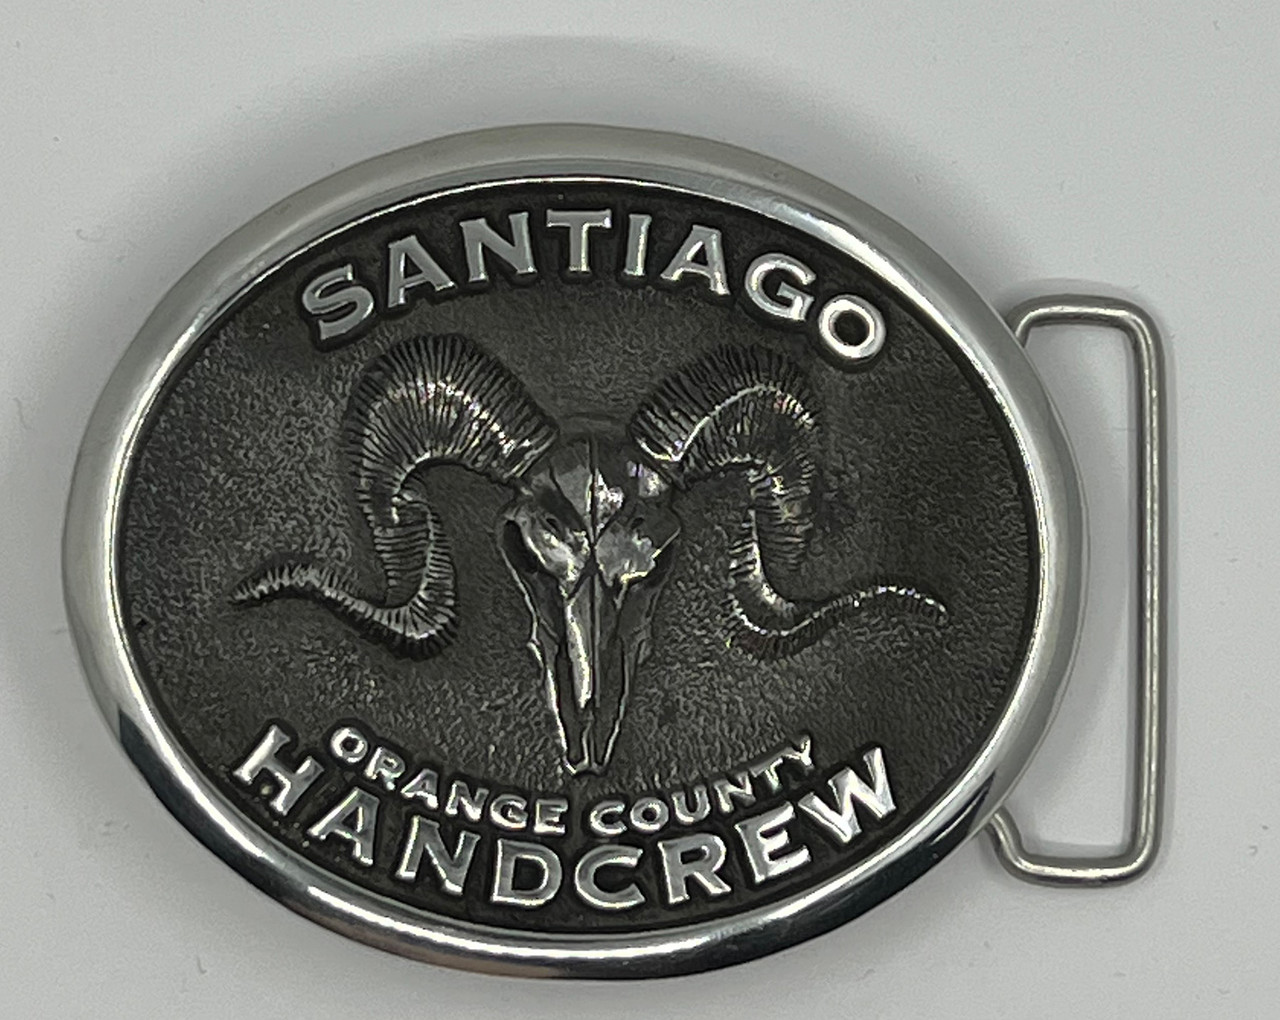 Santiago Handcrew Orange County Buckle (RESTRICTED)